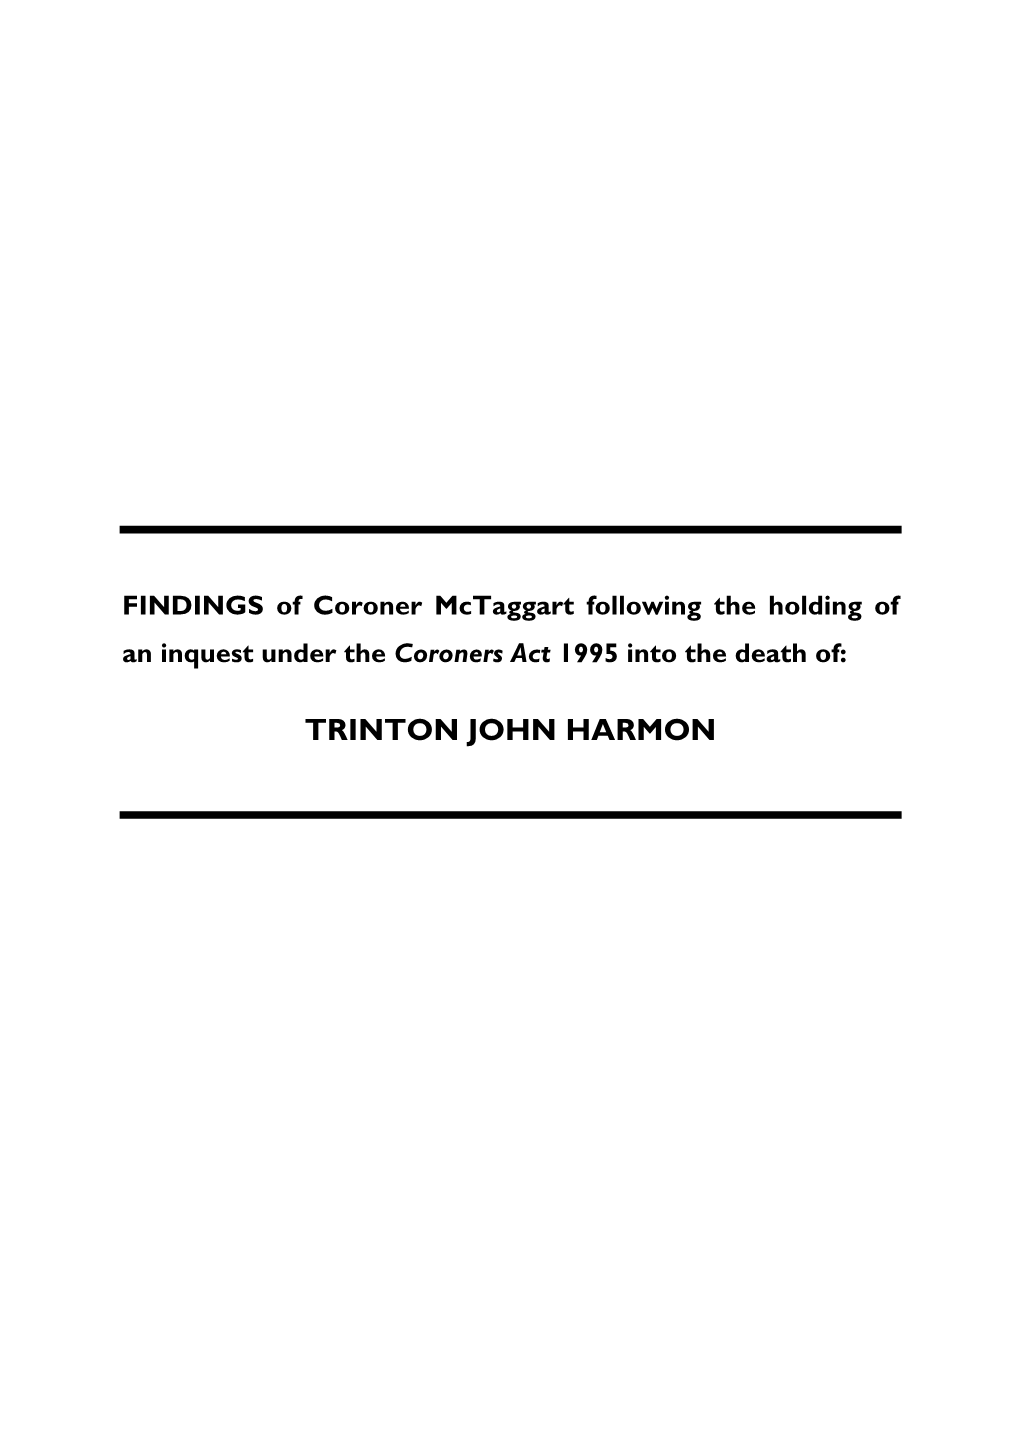 Trinton John Harmon